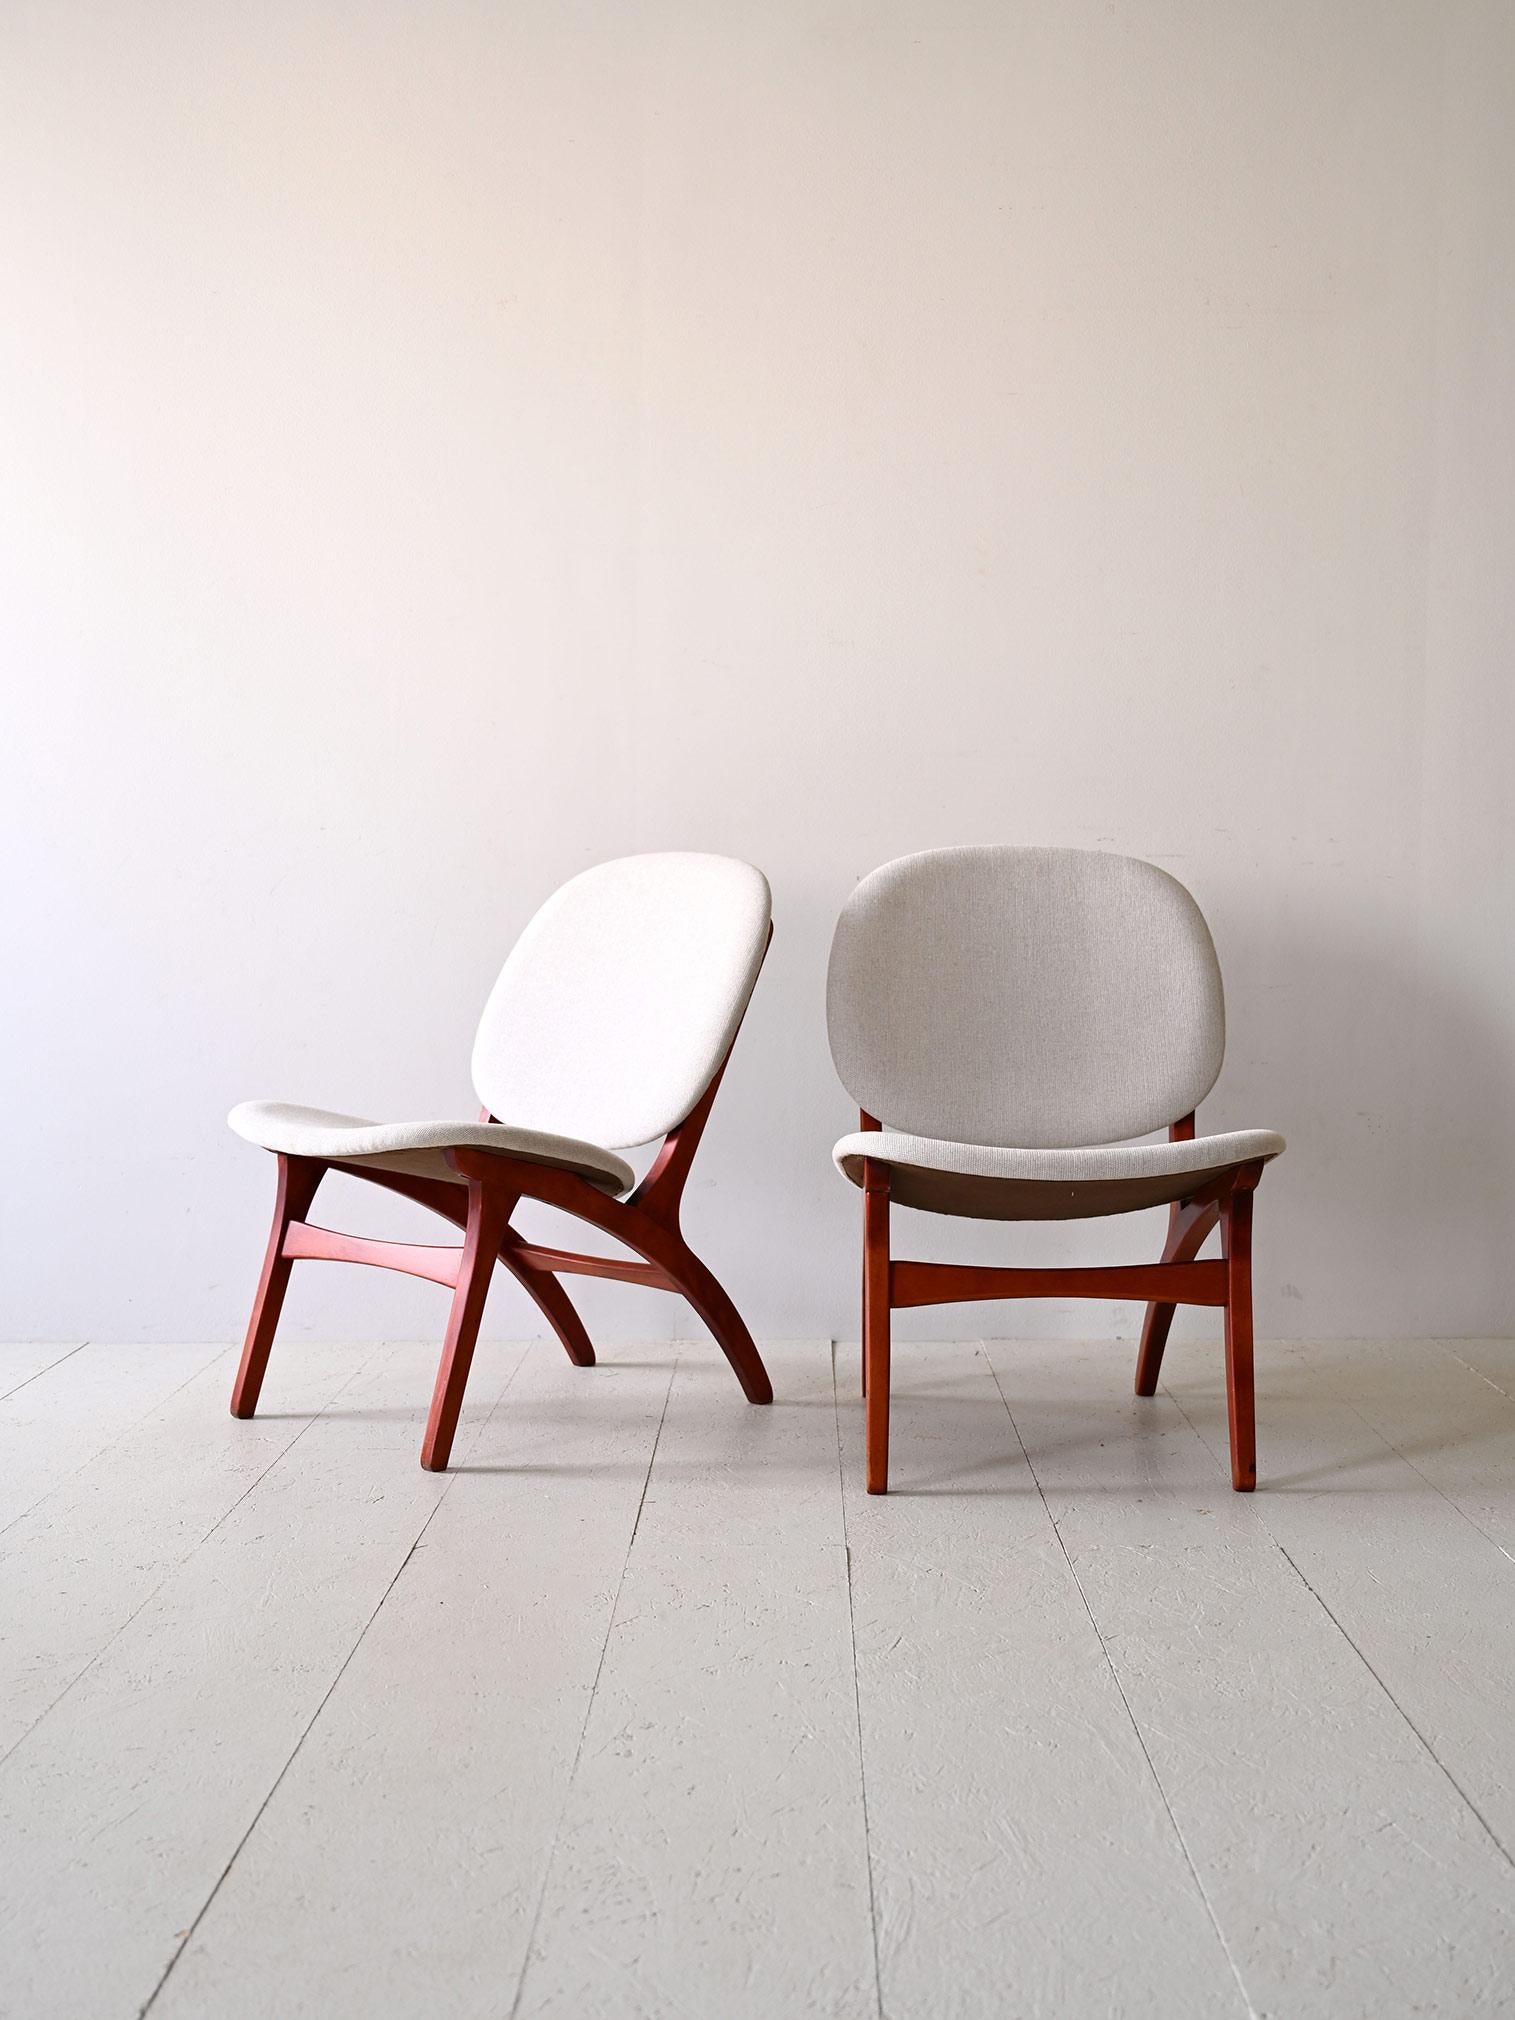 Paire de fauteuils nordiques en tissu blanc  conçu par Carl Edward Matthes dans les années 1950.

Une paire de fauteuils à l'élégance intemporelle, caractérisée par une combinaison raffinée de couleurs. Le tissu blanc des sièges crée un contraste